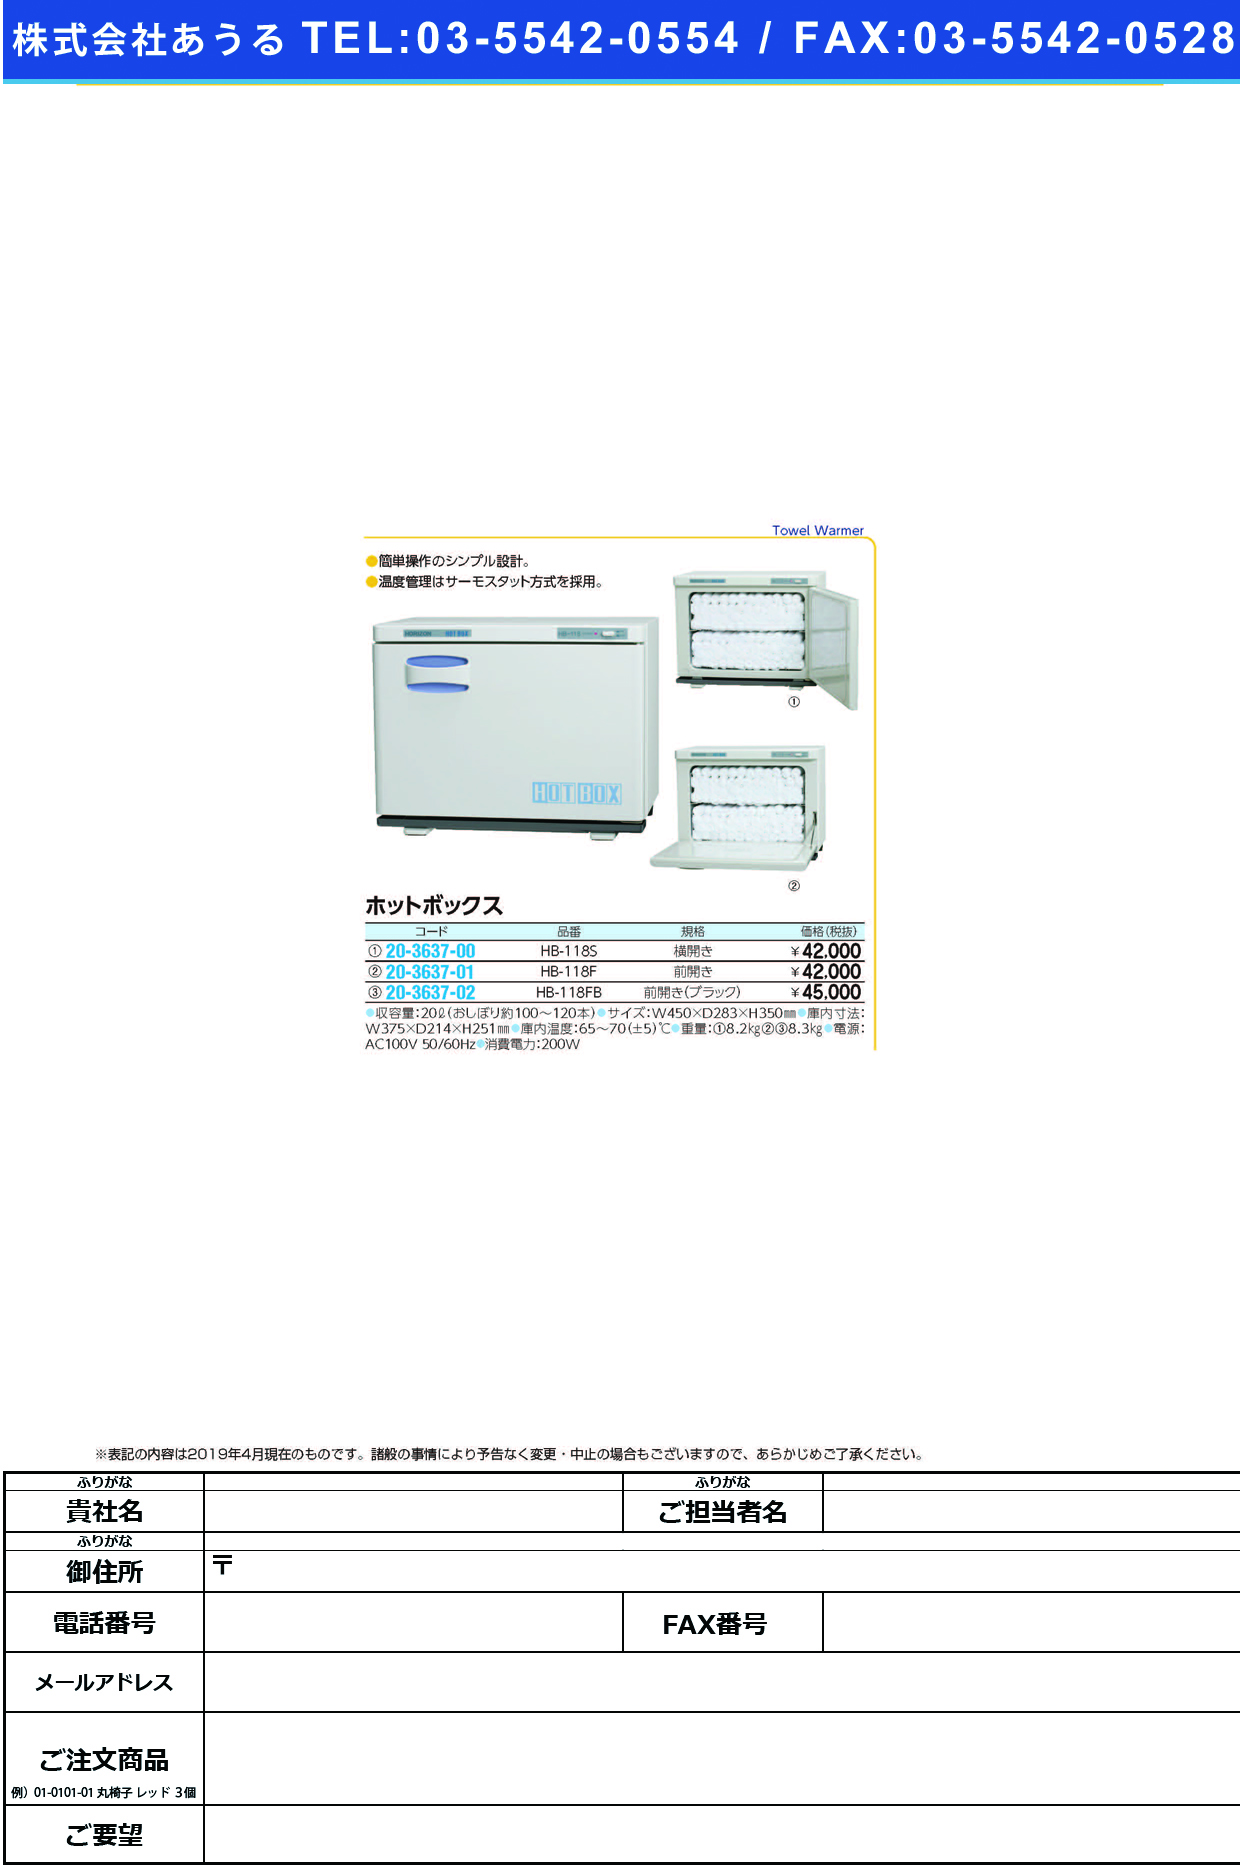 (20-3637-01)ホットボックス（前開き） HB-118F ﾎｯﾄﾎﾞｯｸｽ(ﾏｴﾋﾞﾗｷ)【1台単位】【2019年カタログ商品】